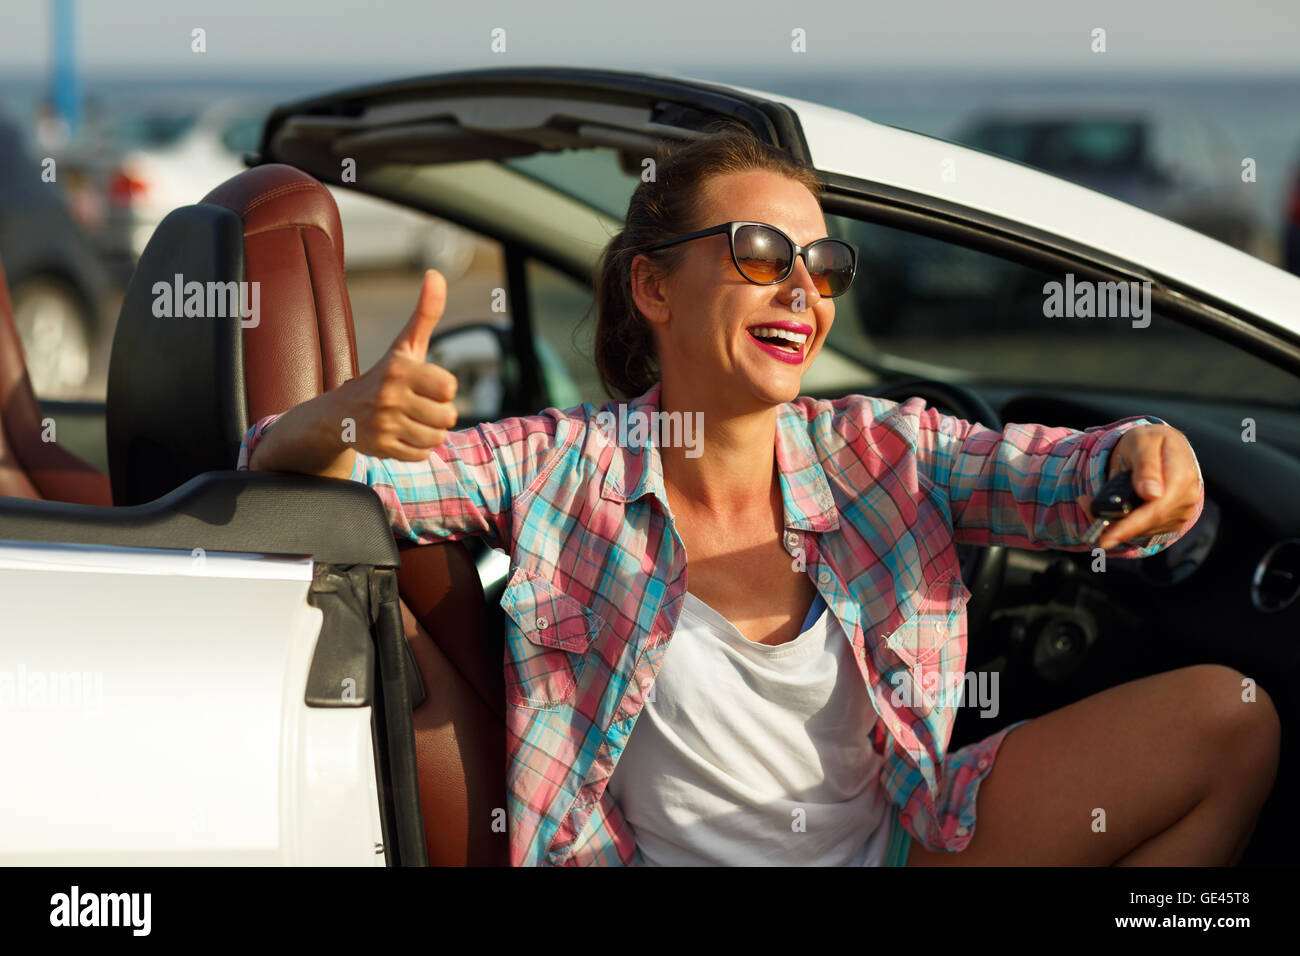 Jolie Jeune femme assise dans une voiture décapotable avec les clés en main - concept de l'achat d'une auto ou d'une voiture de location Banque D'Images